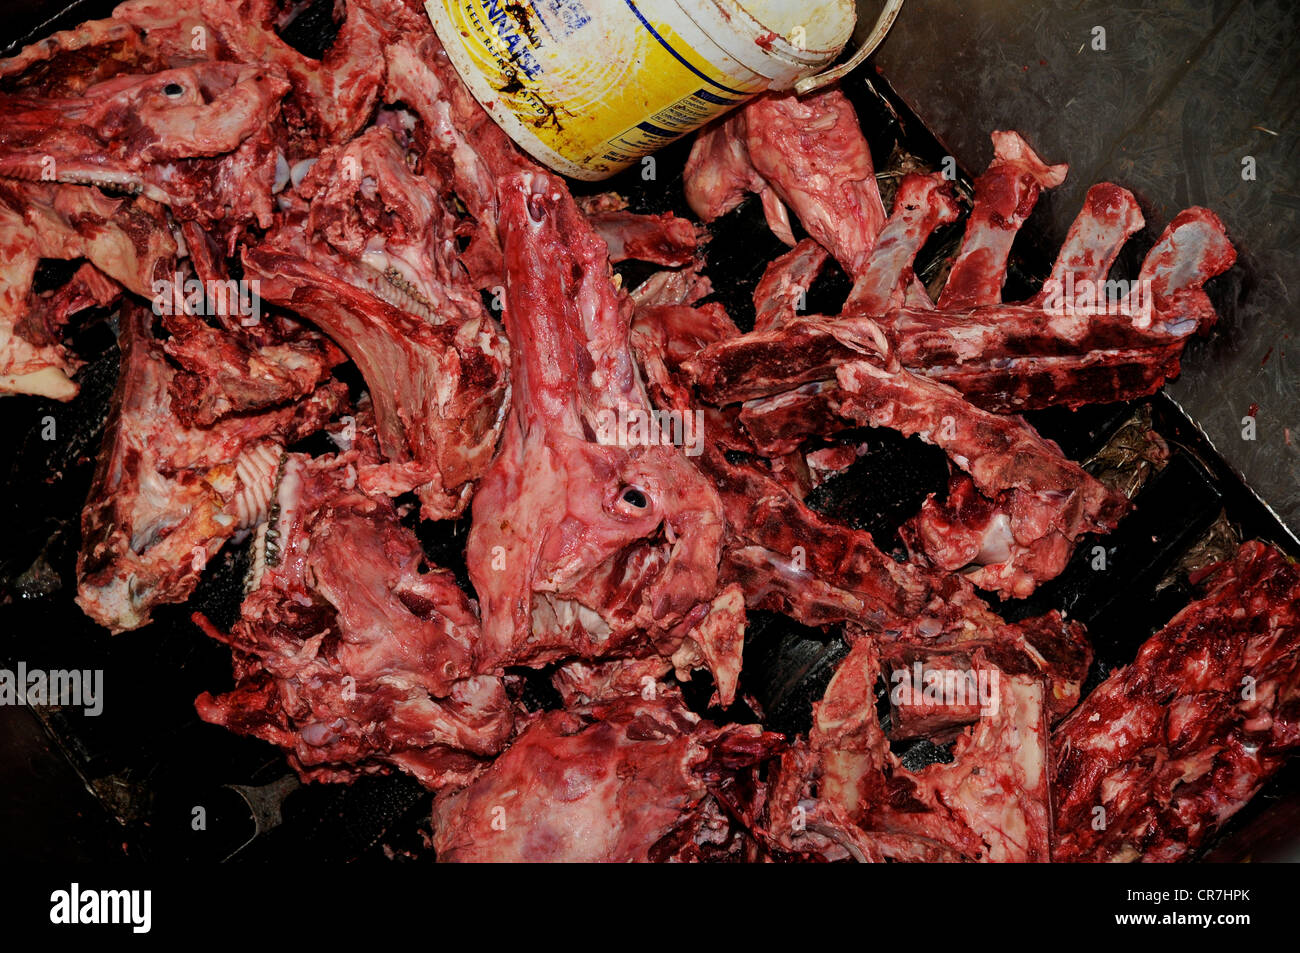 Image result for crushed bones